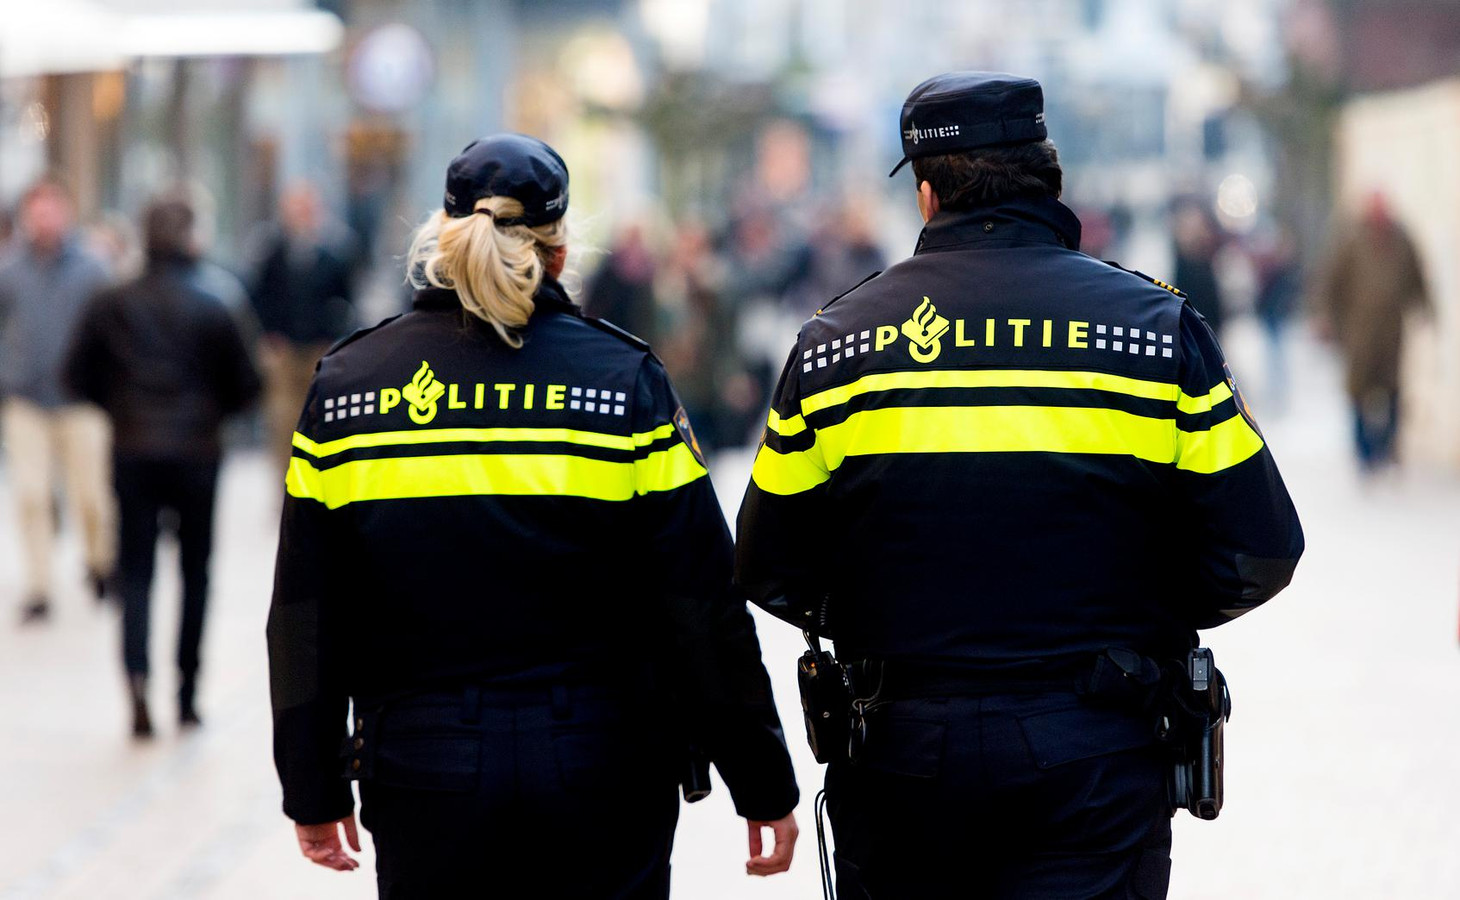 Eeuwigdurend longontsteking Sentimenteel Geen extra papierwerk voor politie | Foto | AD.nl